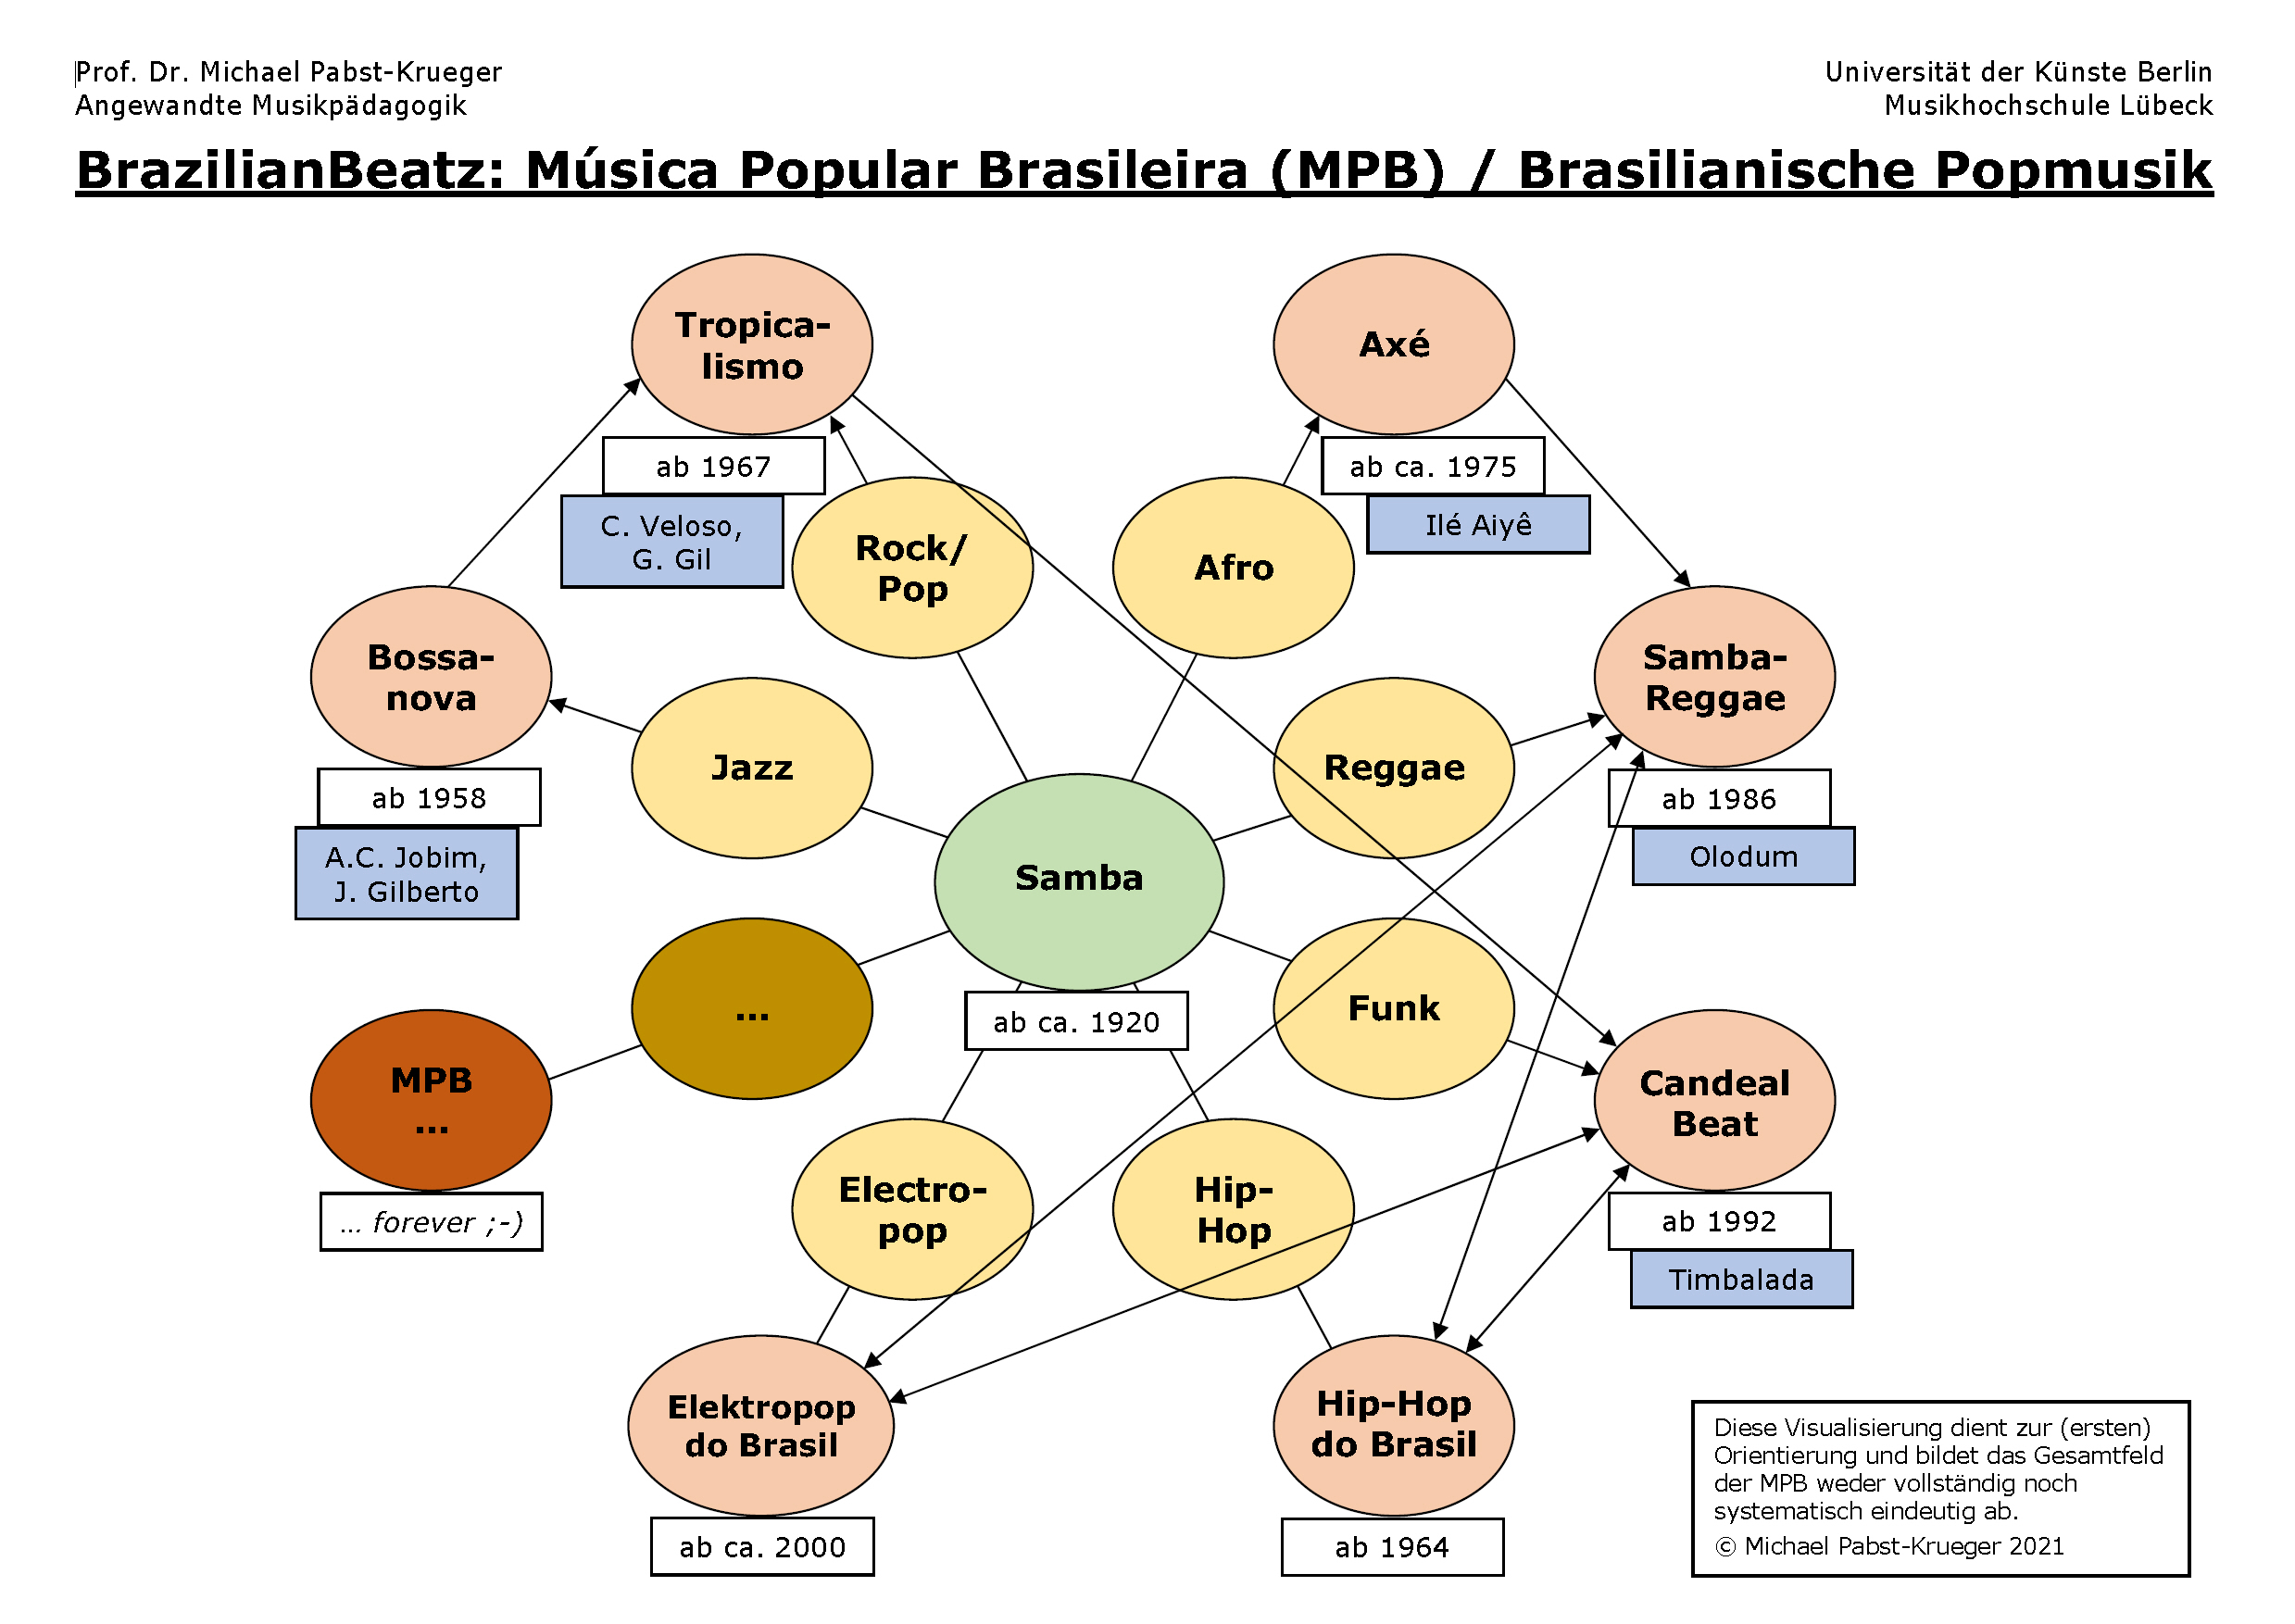 Schaubild zur Systematisierung der verschiedenen Stilistiken der "Música Popular Brasileira"  
© Michael Pabst-Krueger, 2021